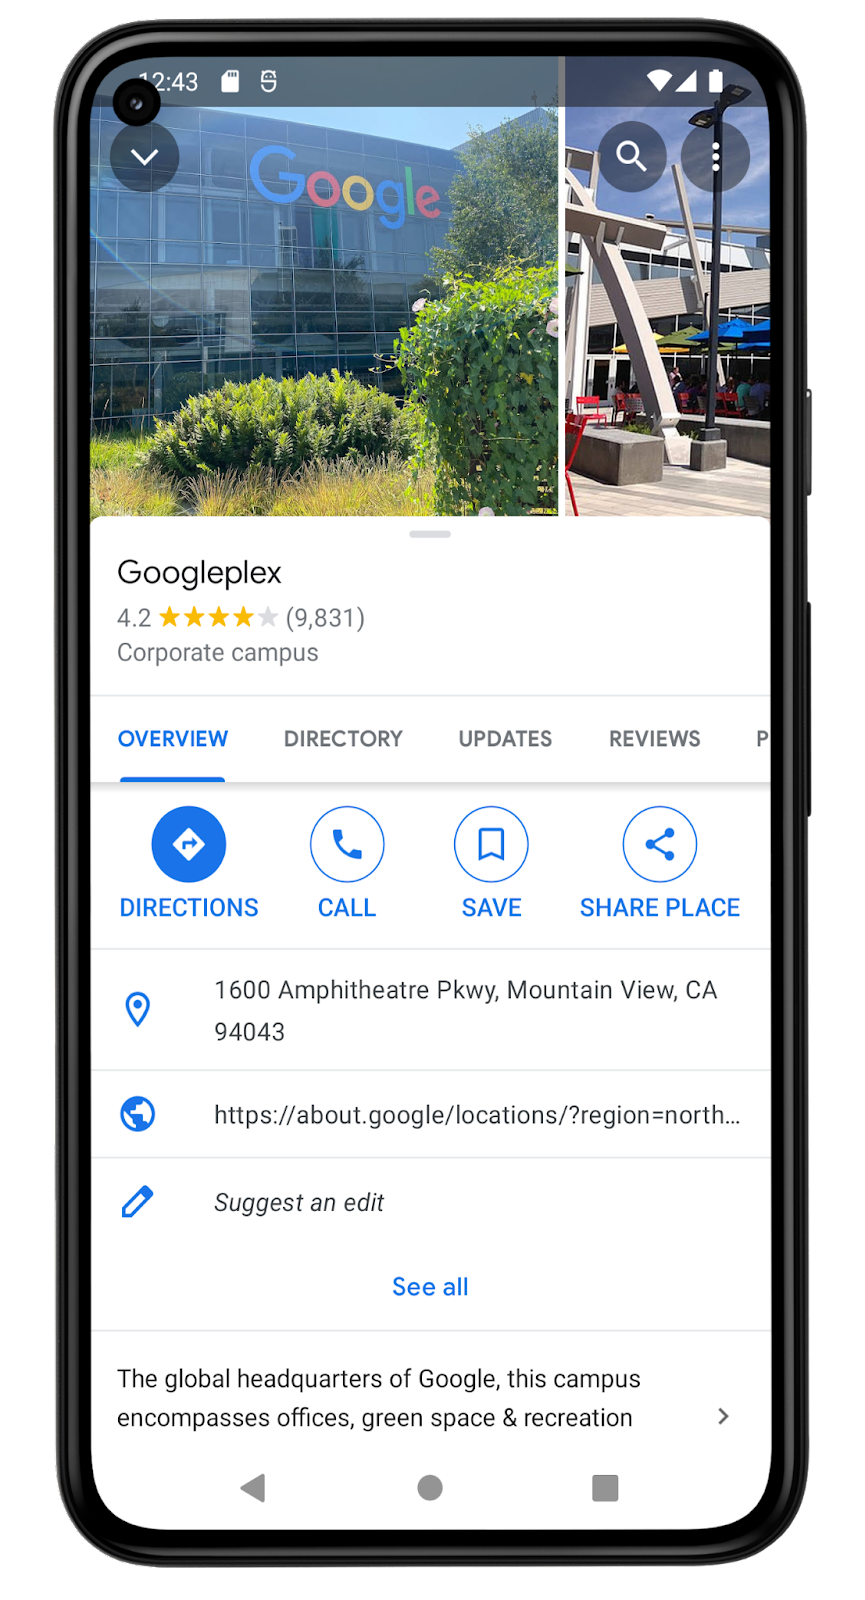 この Google マップアプリのスクリーンショットには、Googleplex の場所の詳細が表示されています。Googleplex は社屋で、Google のグローバル本社であると説明されています。この場所は、9,831 件のクチコミによって 4.2 という評価を受けています。住所は、1600 Amphitheatre Pkwy, Mountain View, CA 94043 です。この画面には、この場所をリストに保存するためのオプションがあります。